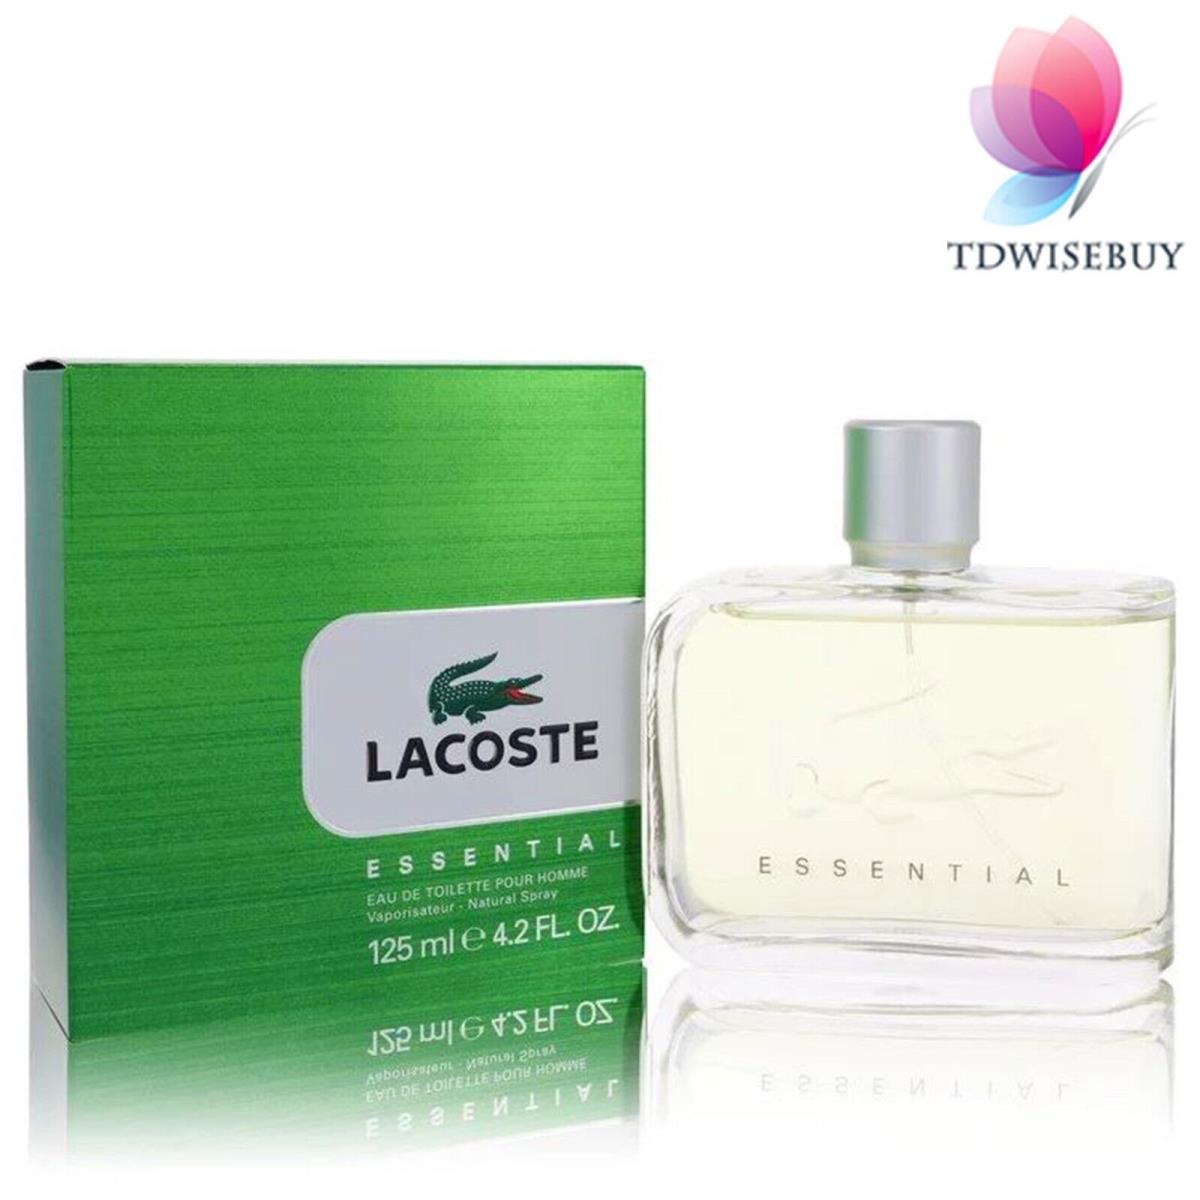 Lacoste Essential Cologne Men Perfume by Lacoste Eau De Toilette Spray 4.2 oz